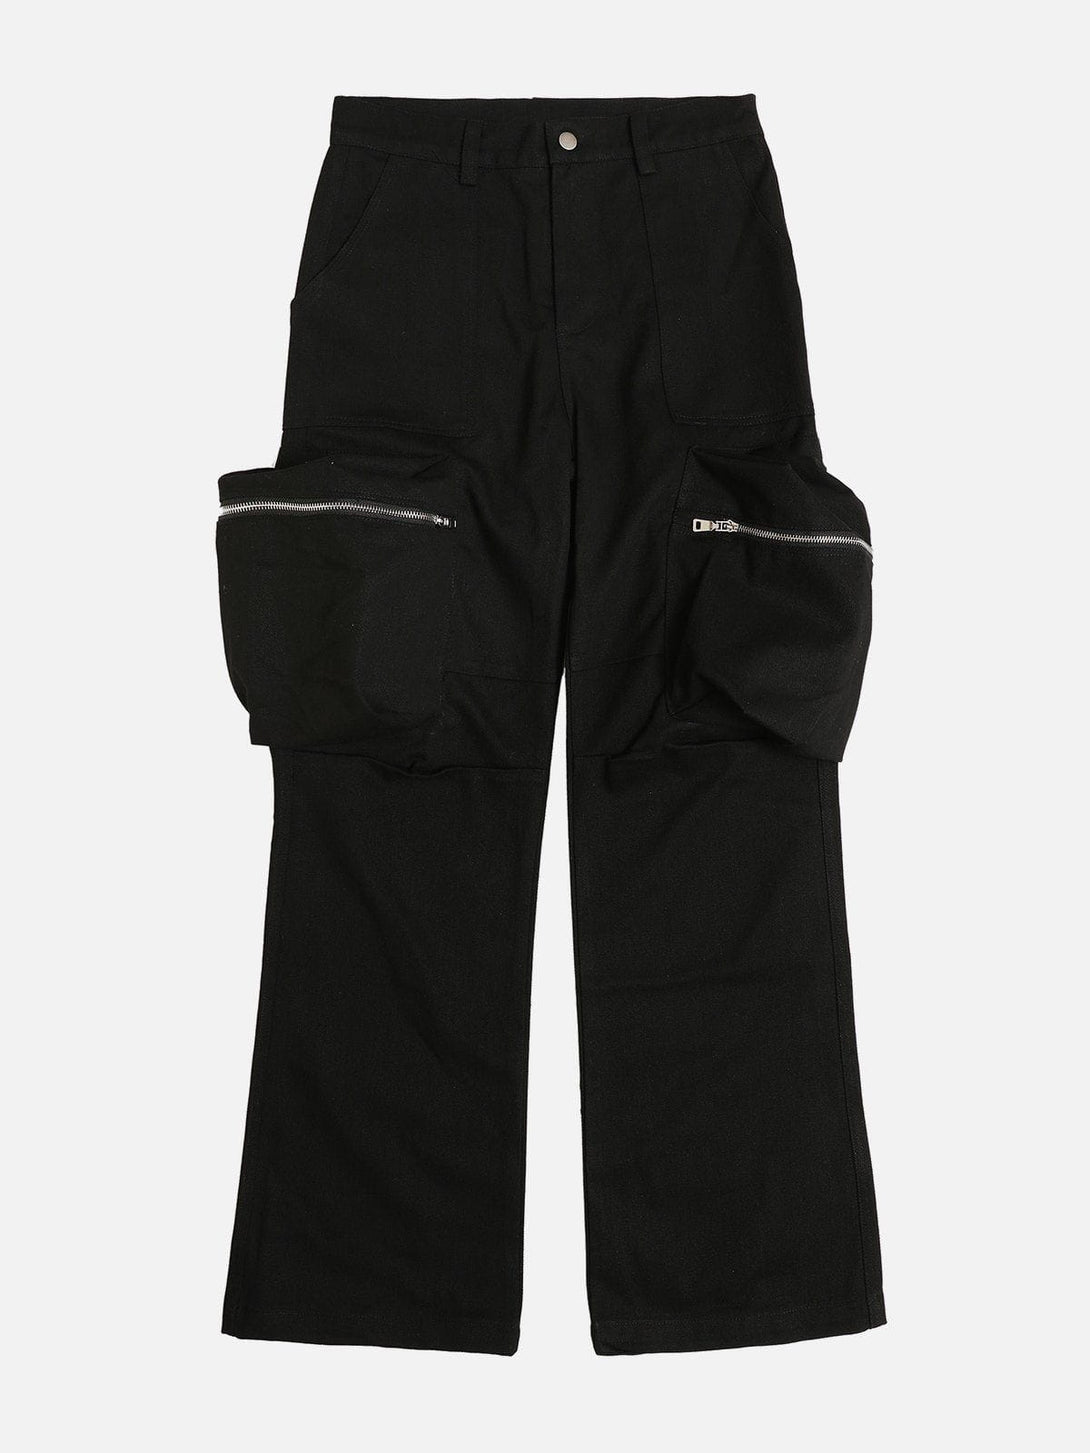 Levefly - Camouflage Large Pocket Cargo Pants - Streetwear Fashion - levefly.com